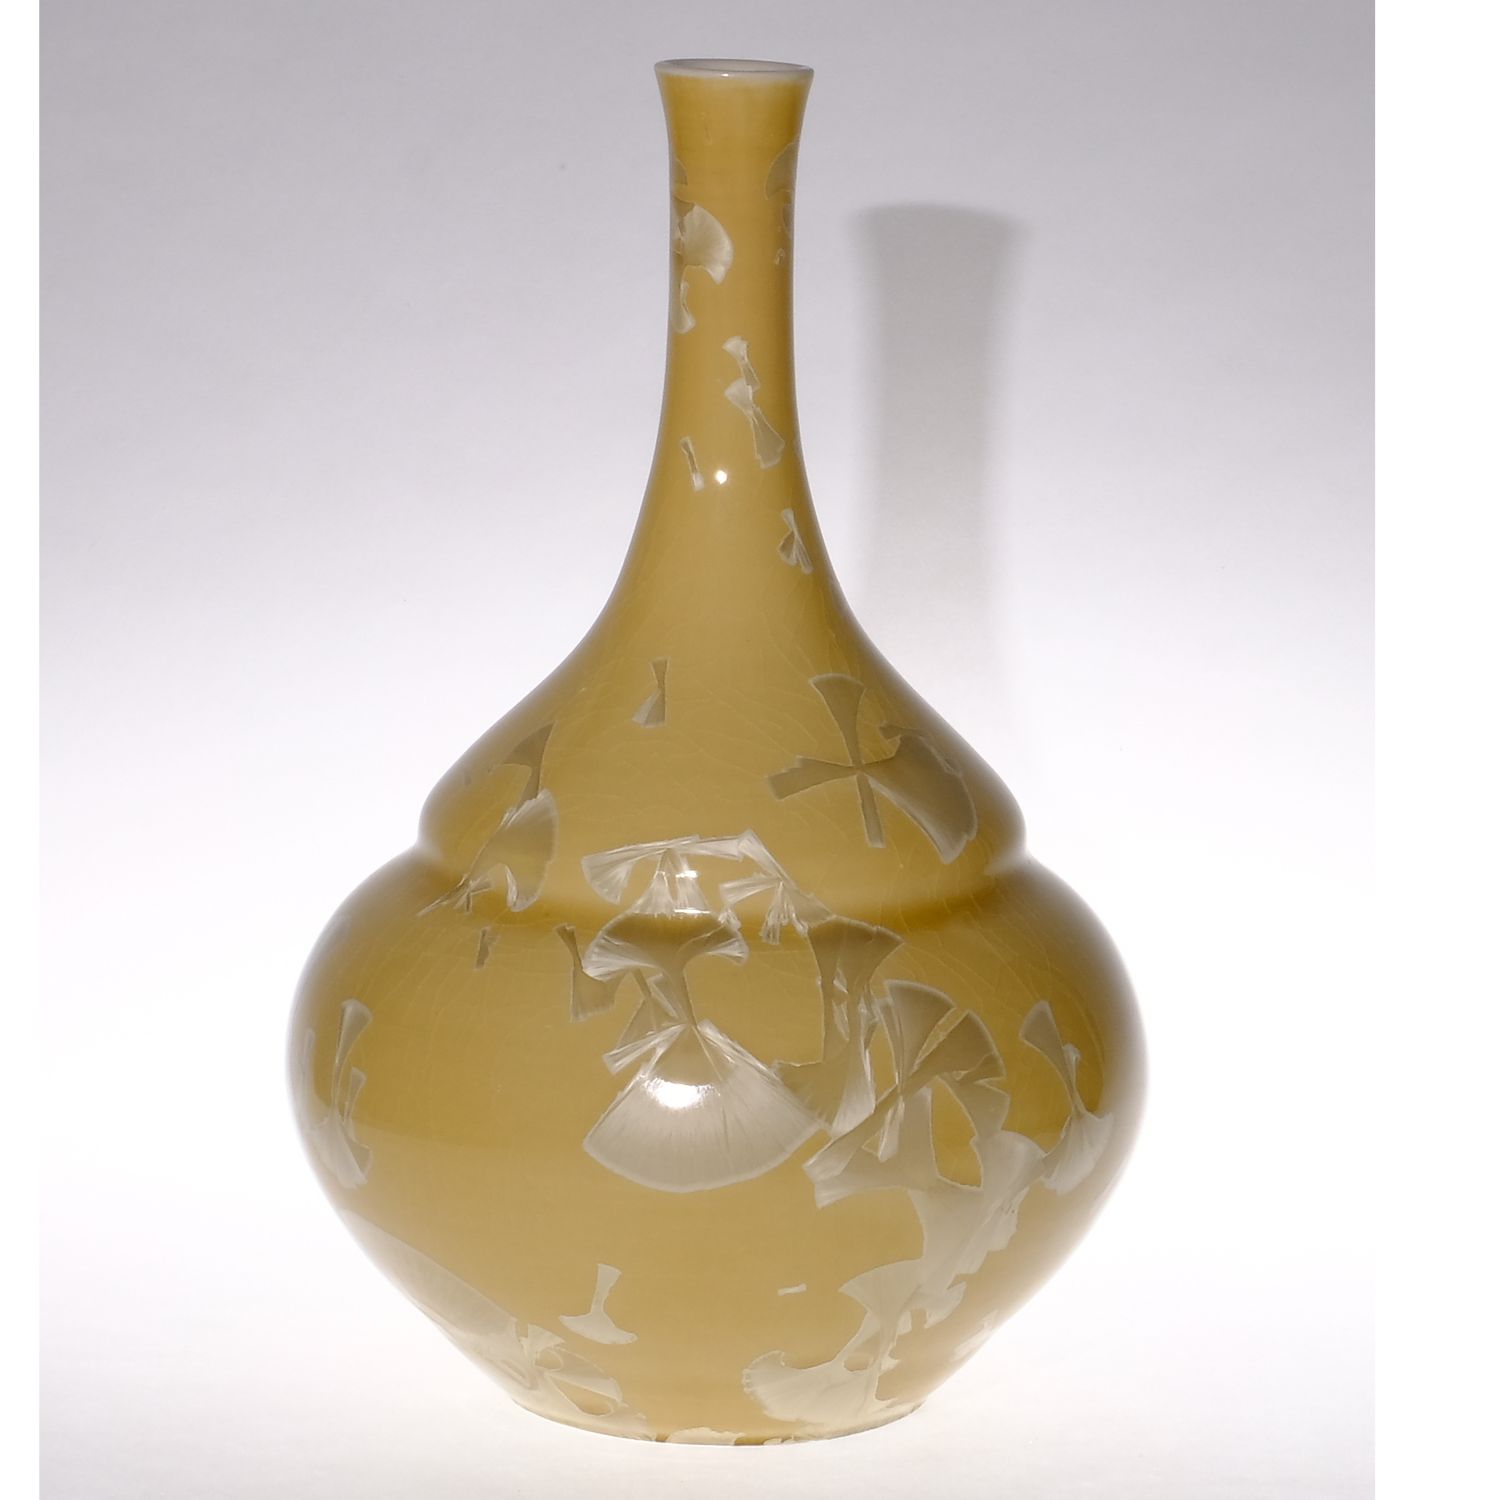 Yumiko Katsuya: Yellow on Brown Long Neck Vase Product Image 1 of 1